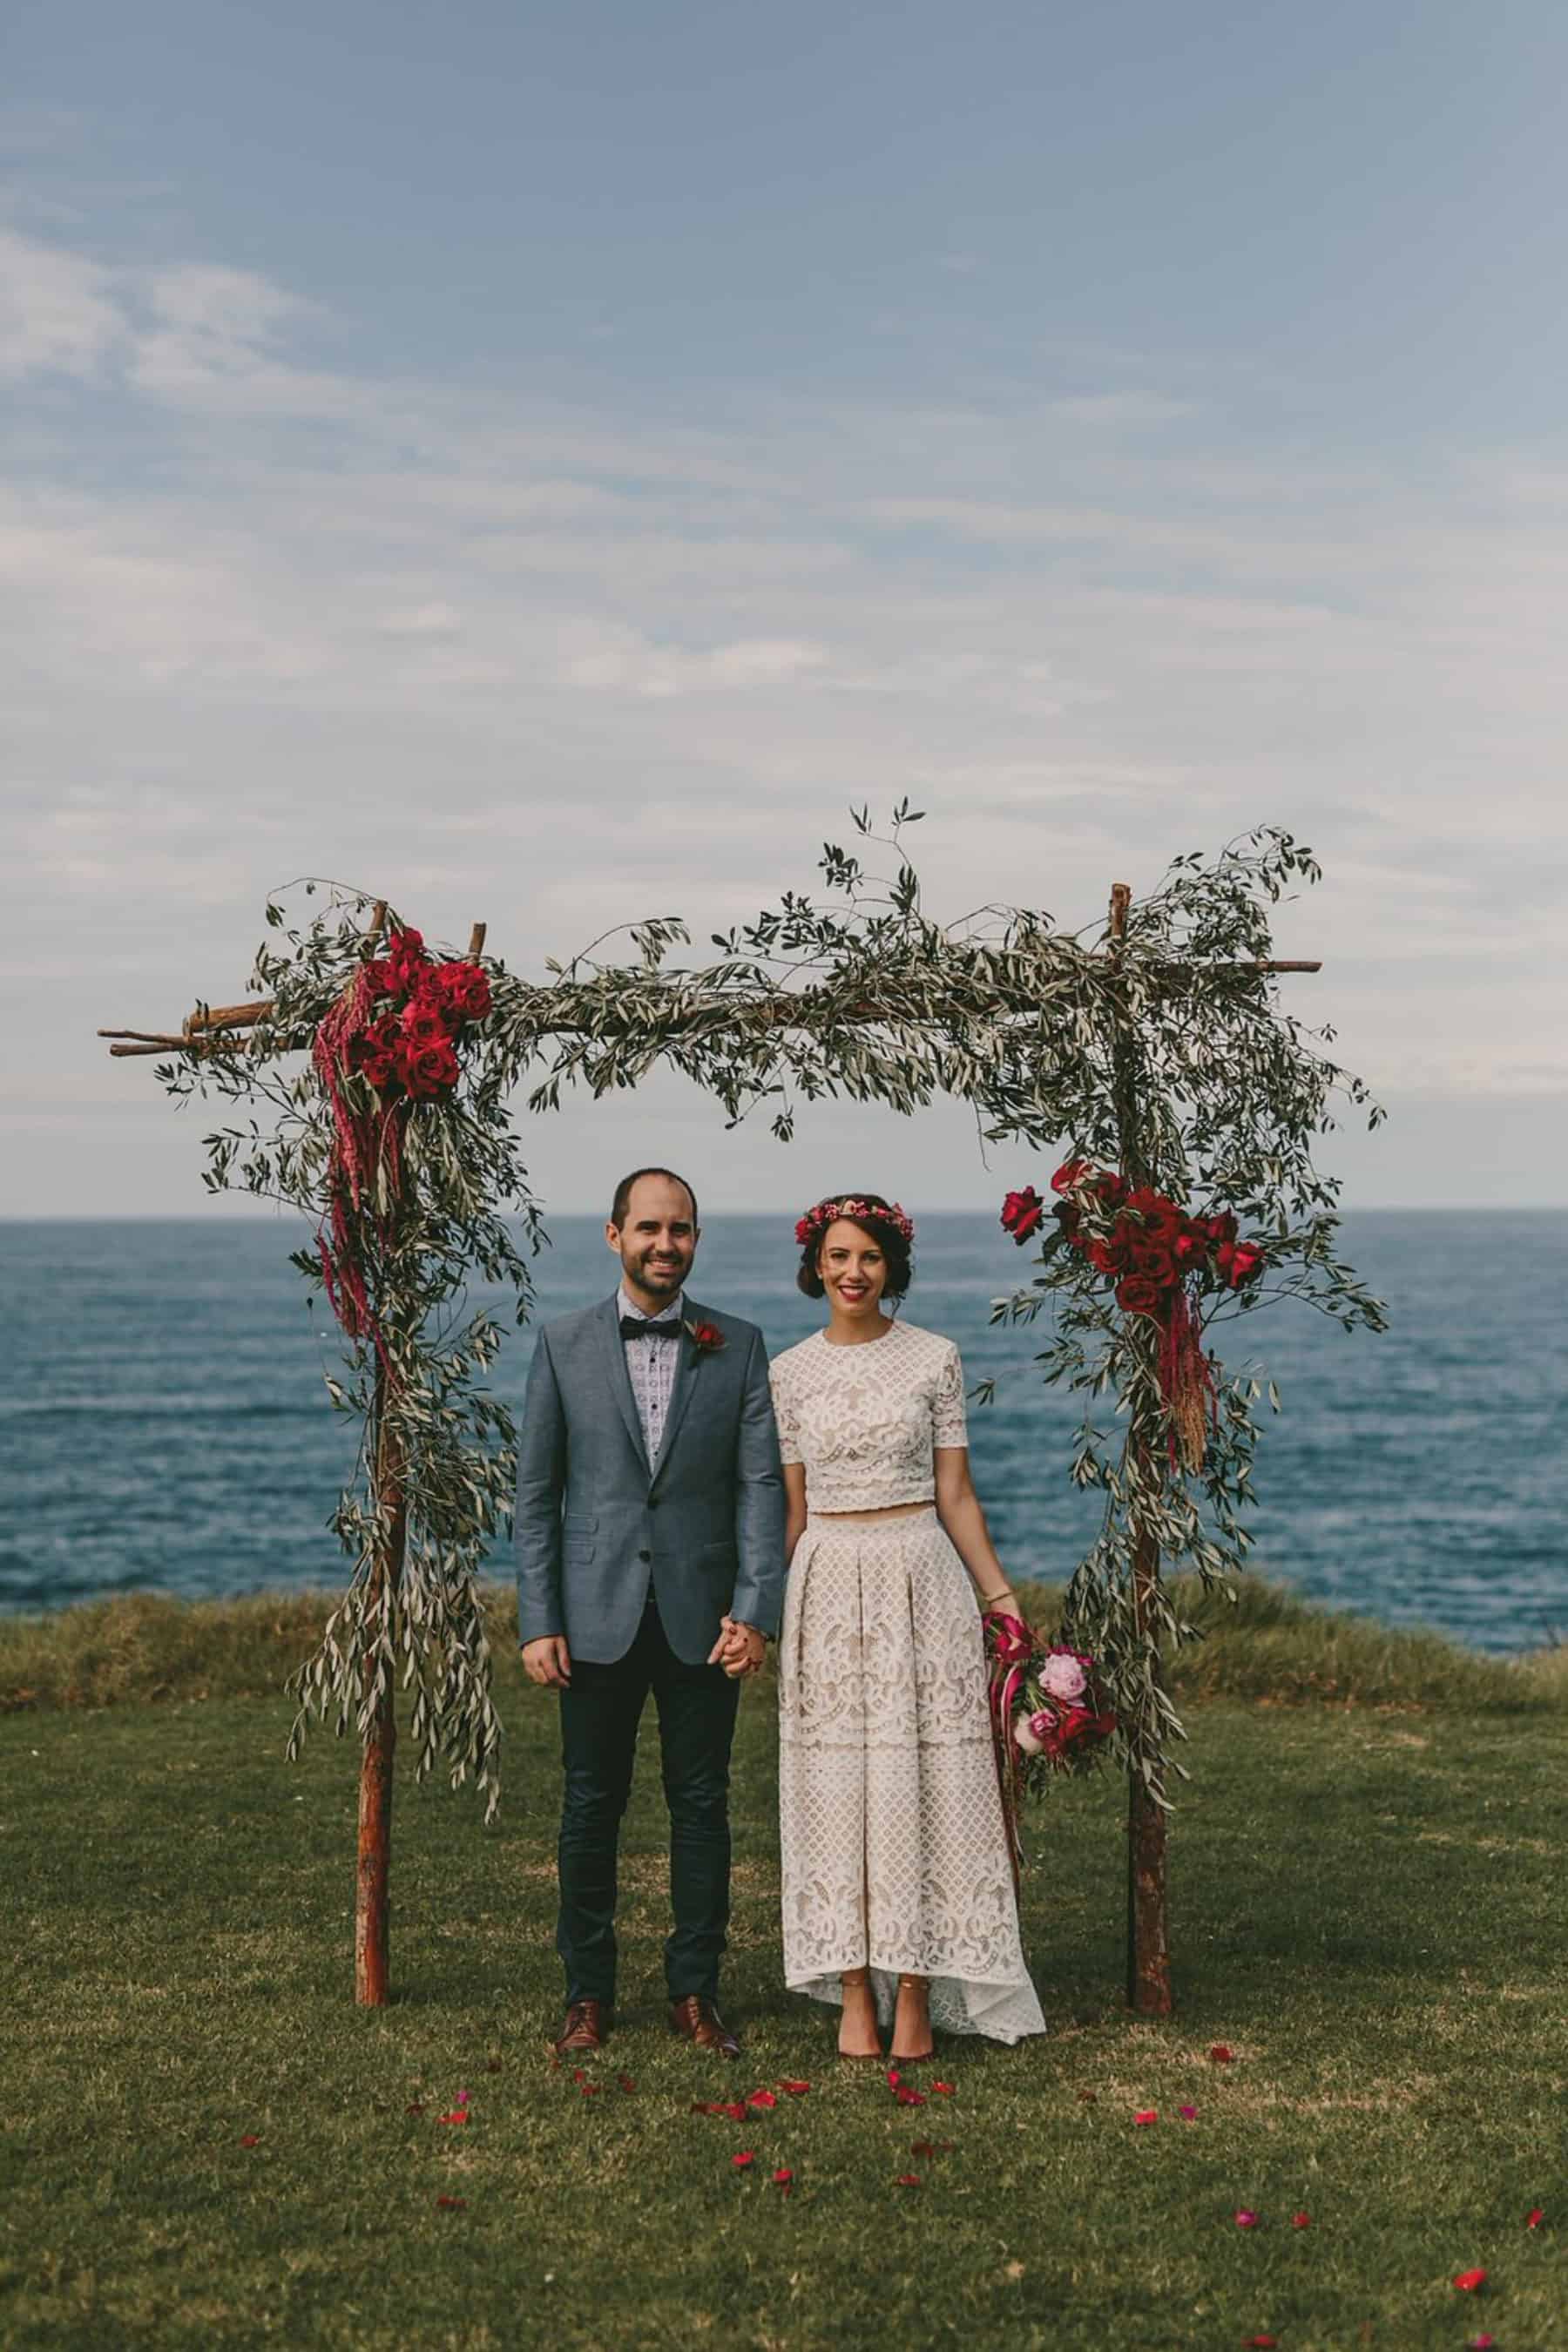 Top 10 weddings of 2017 | Andrea & Matt’s Vintage Garden Party Wedding